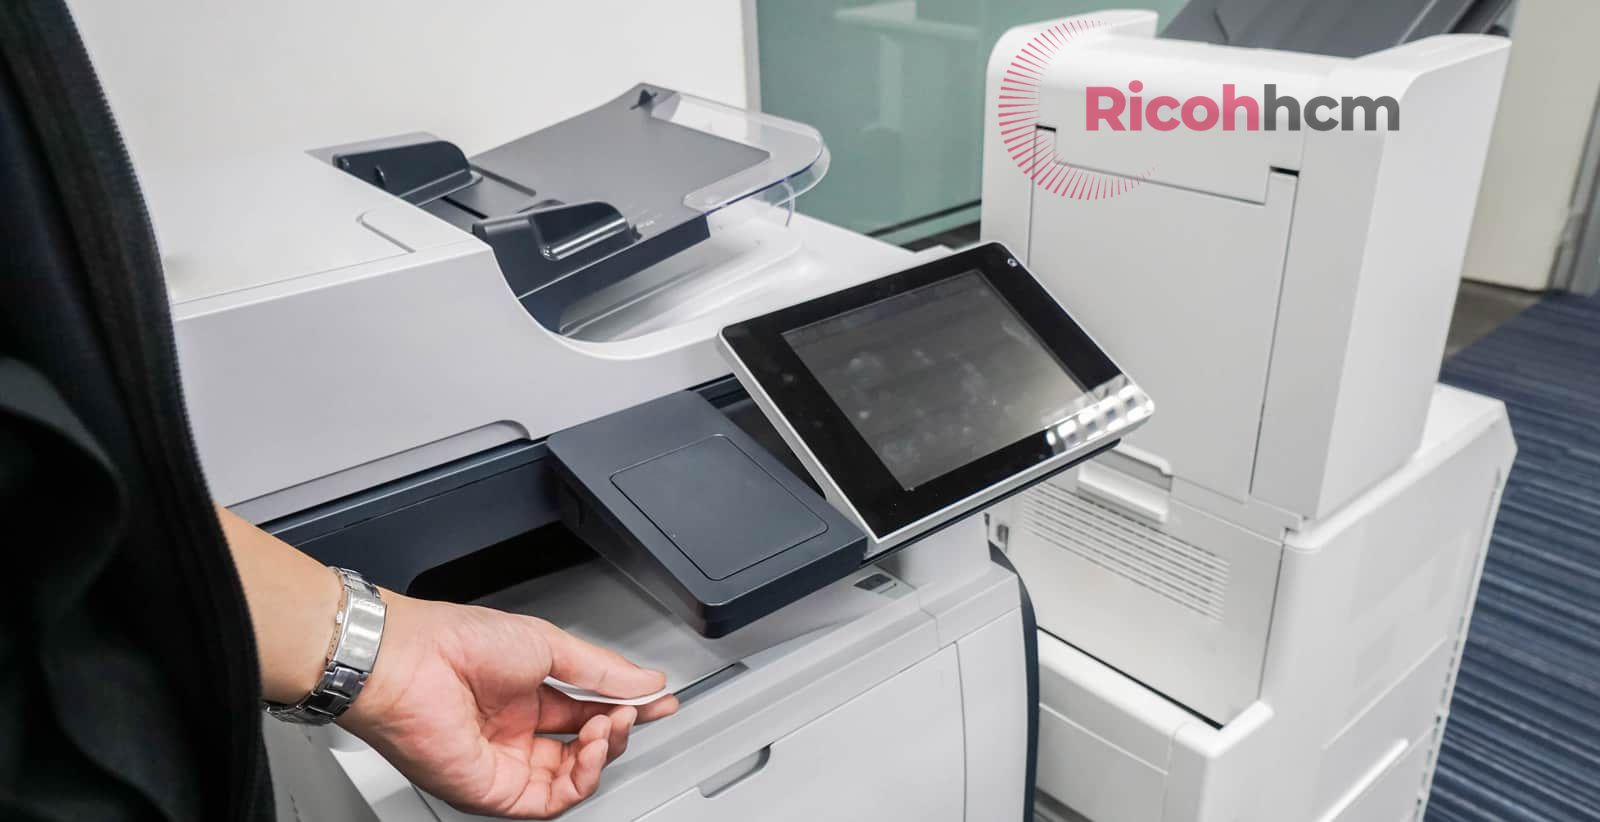 Trên thị trường hiện nay có rất nhiều đơn vị cung cấp máy photocopy màu đã qua sử dụng, tuy nhiên bạn cần thật cẩn thận để có thể phân biệt được nơi nào bán máy photocopy màu có chất lượng